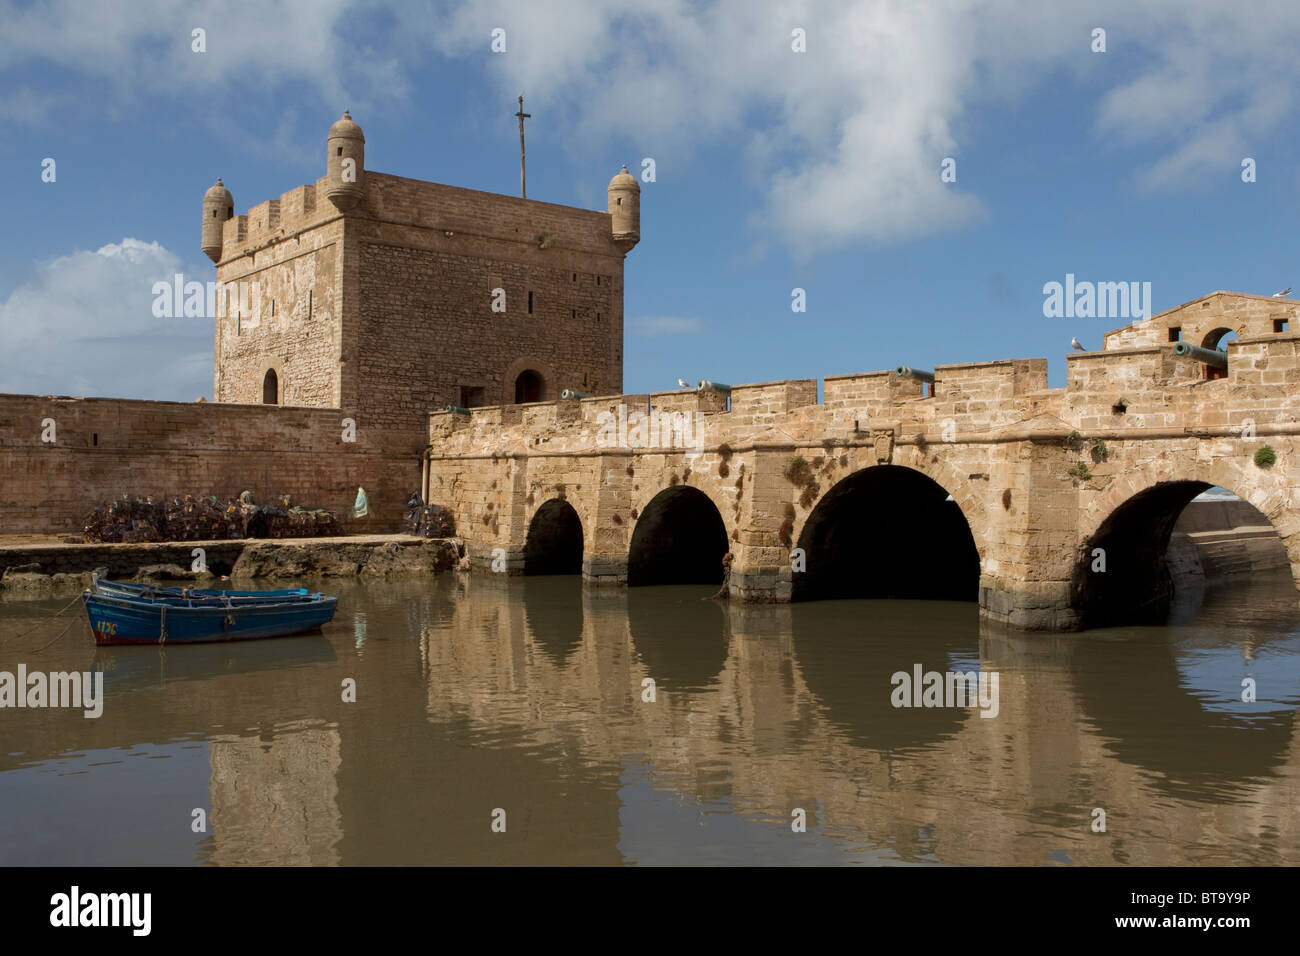 Histórico Fort,Essaouira, Marruecos, Norte de África Foto de stock